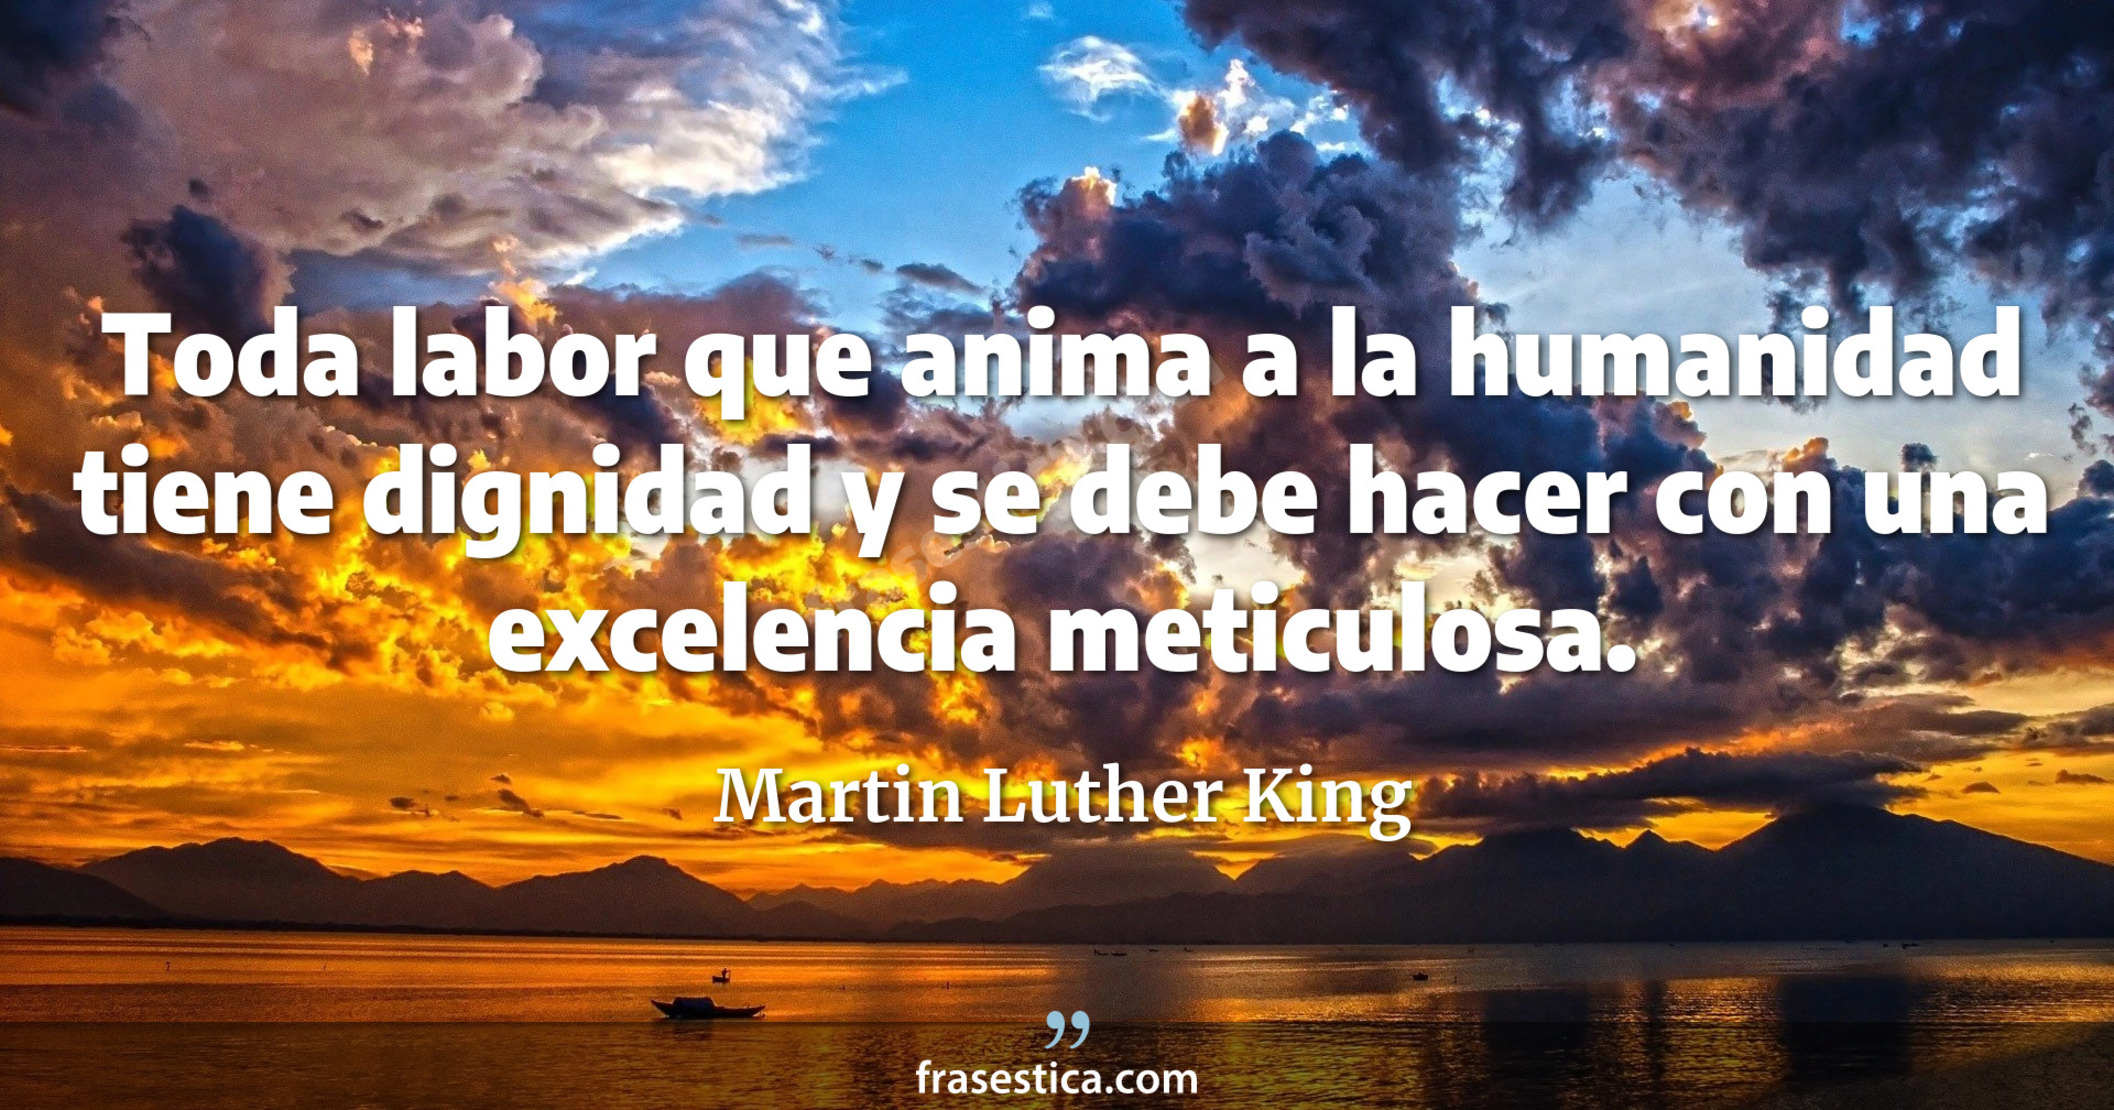 Toda labor que anima a la humanidad tiene dignidad y se debe hacer con una excelencia meticulosa. - Martin Luther King